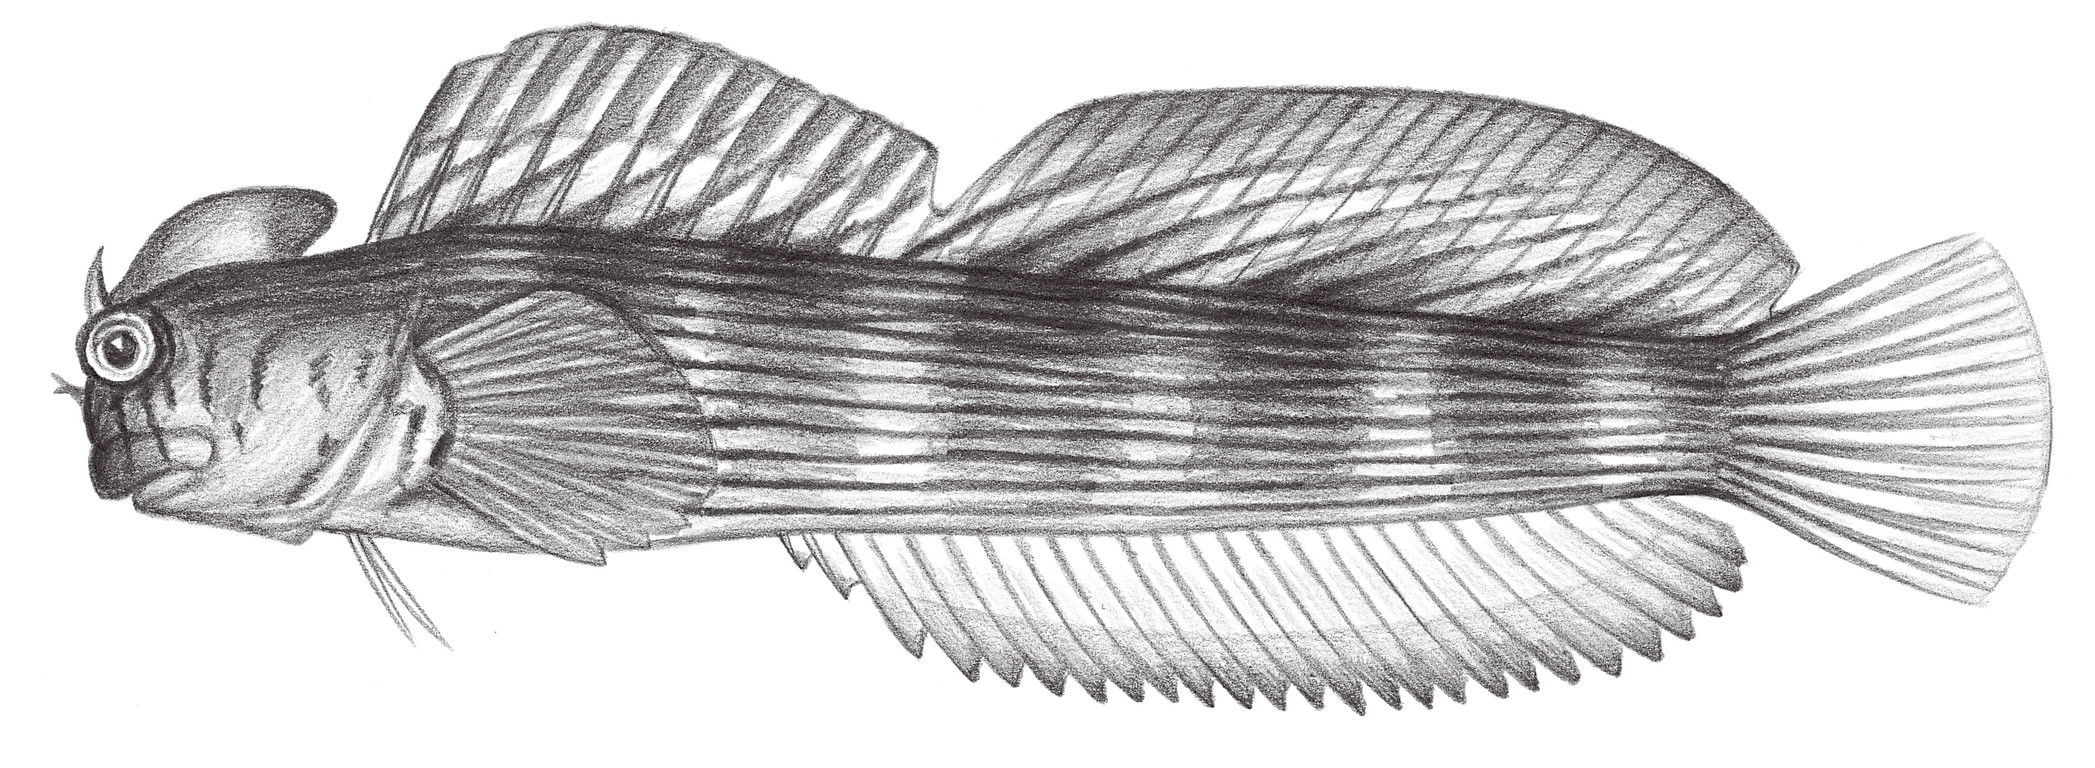 1975.	紋身蛙鳚 Istiblennius lineatus (Valenciennes, 1836)